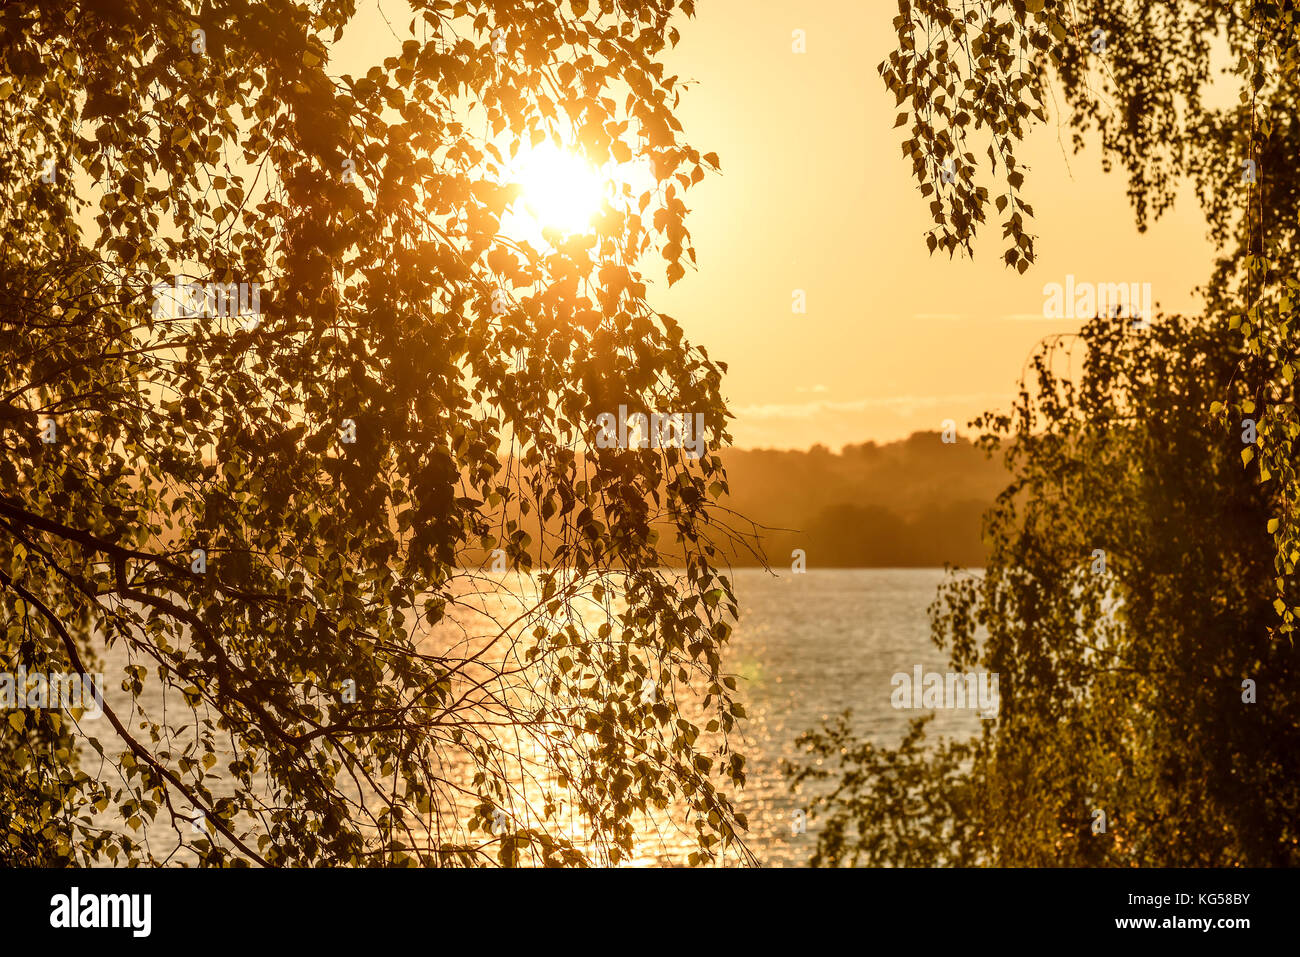 Bella vista dalla riva attraverso le foglie e rami di betulle sul fiume, il sole e i riflessi sull'acqua in orange la luce del tramonto Foto Stock